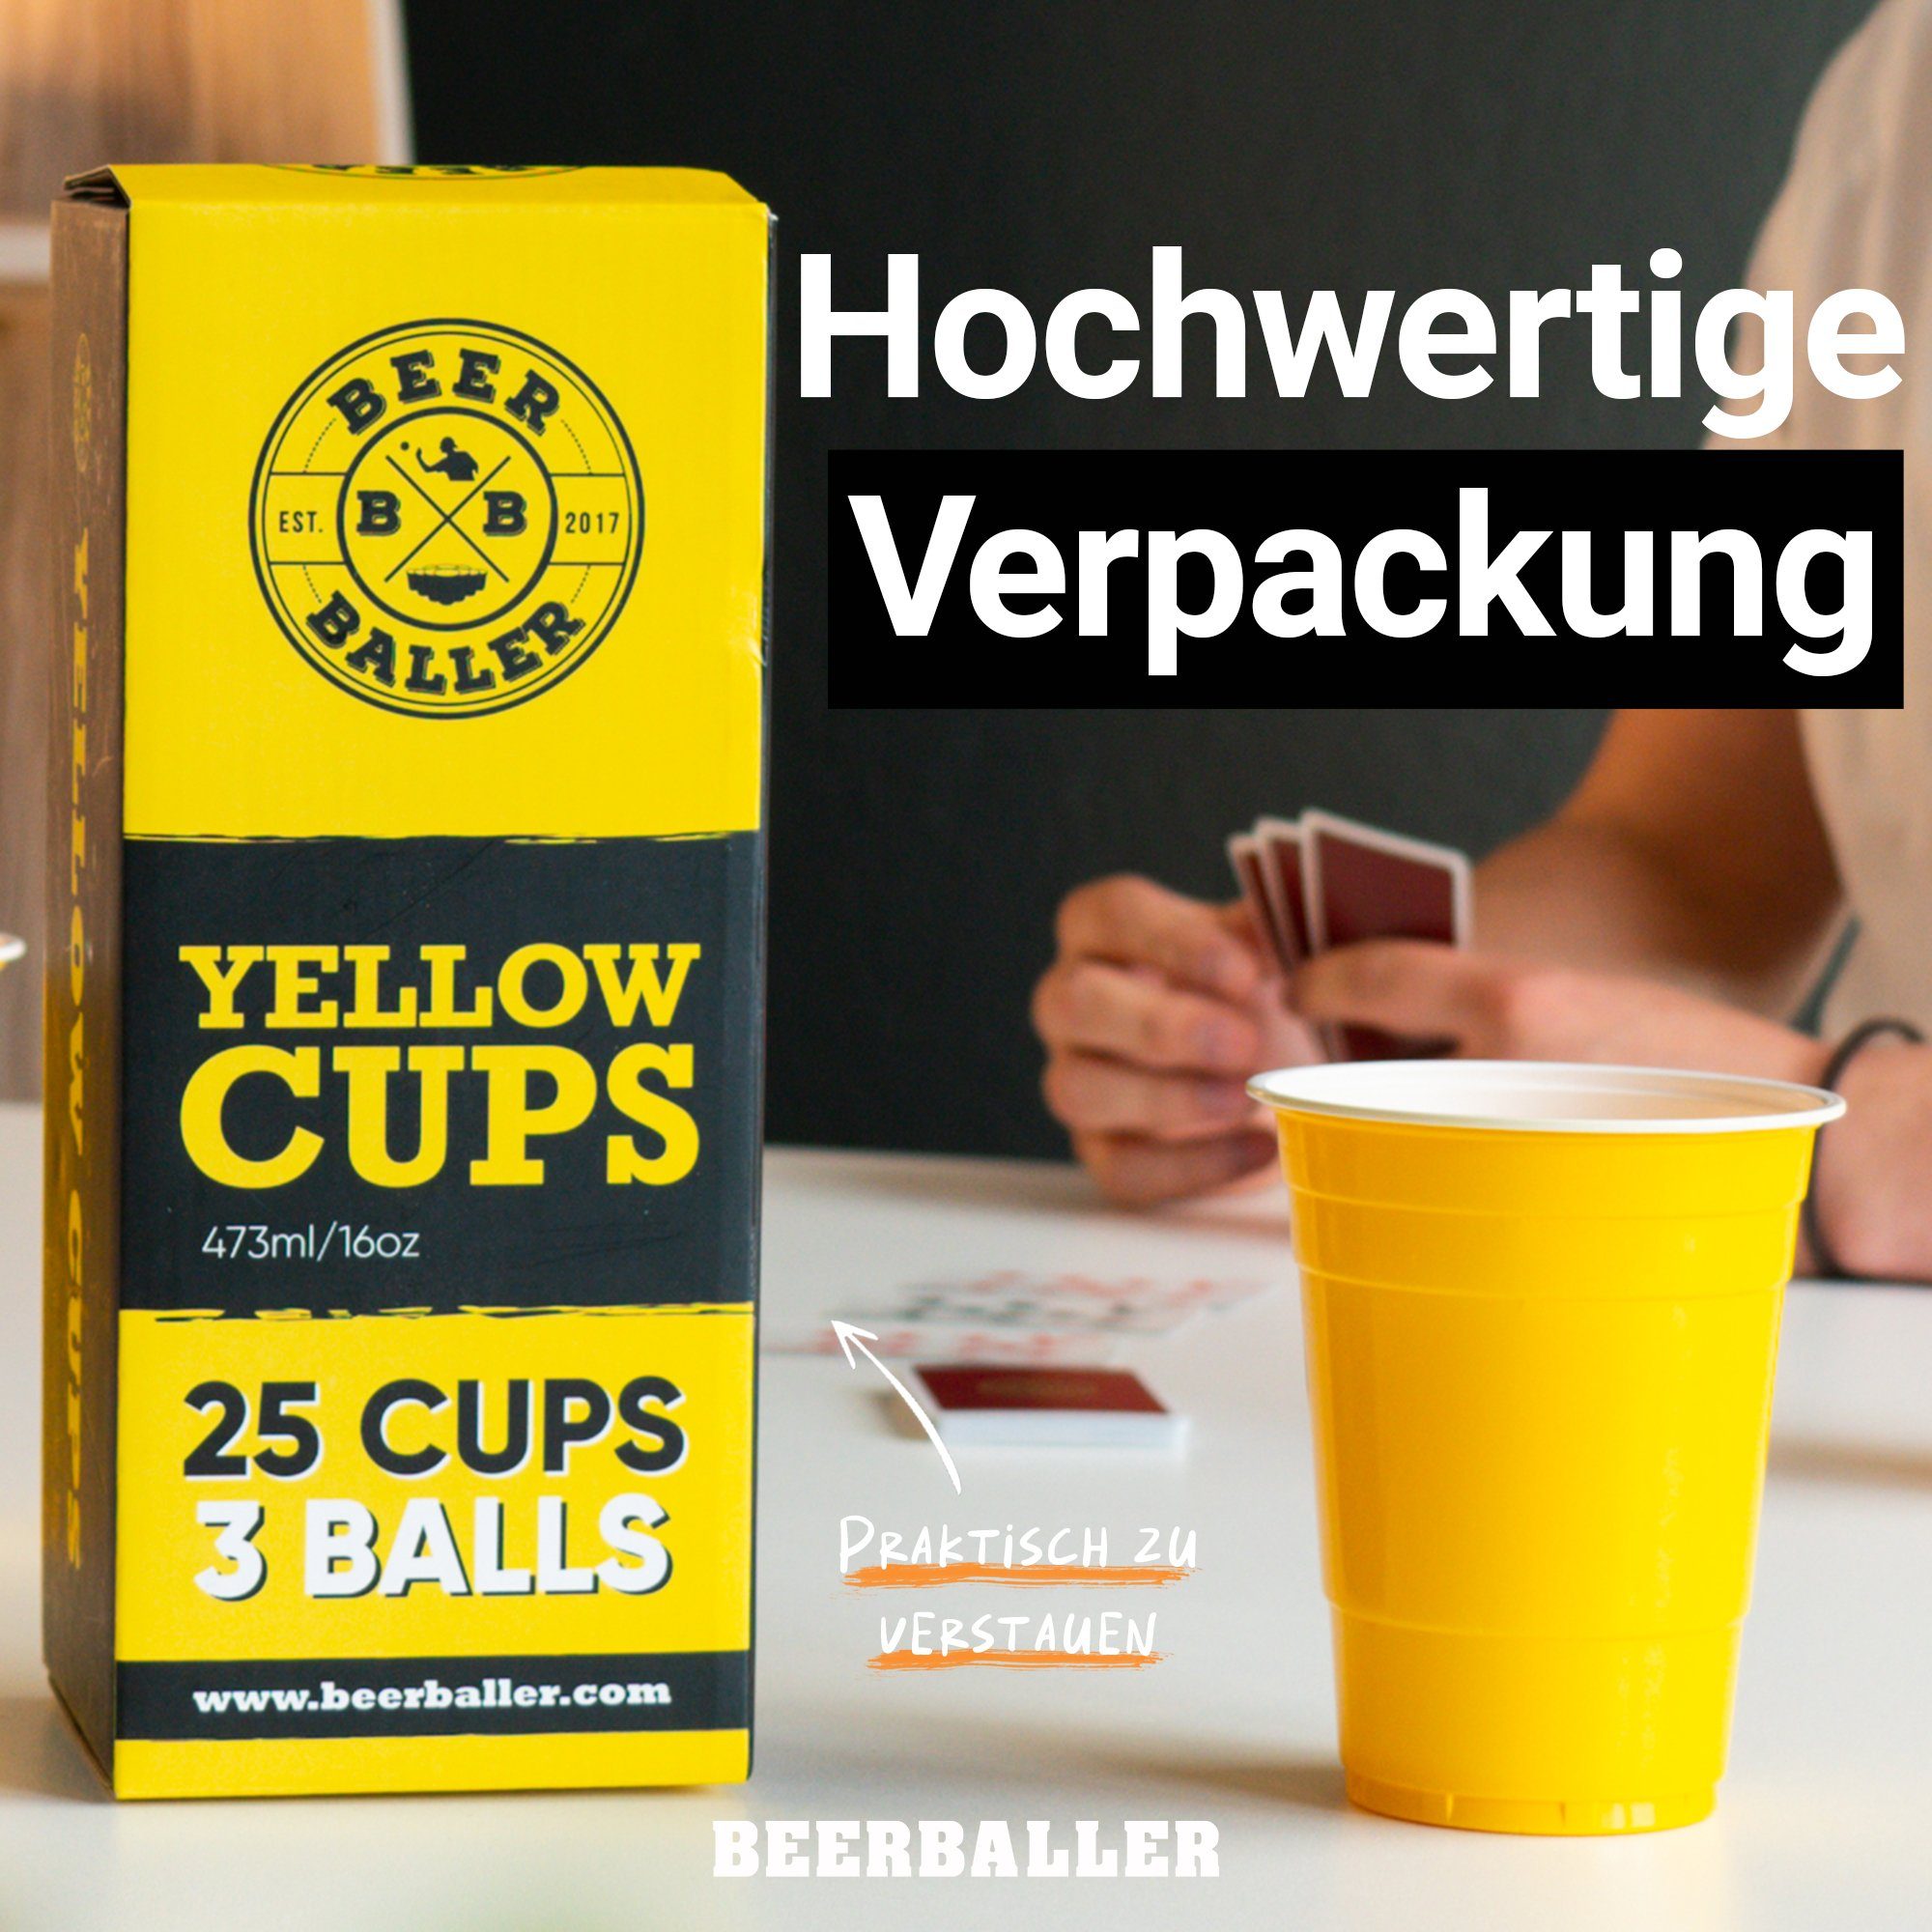 BeerBaller Becher BeerBaller® Beer als Pong Becher 25 gelbe Yelllow Cups & Bälle Set, 16oz/473ml 3 